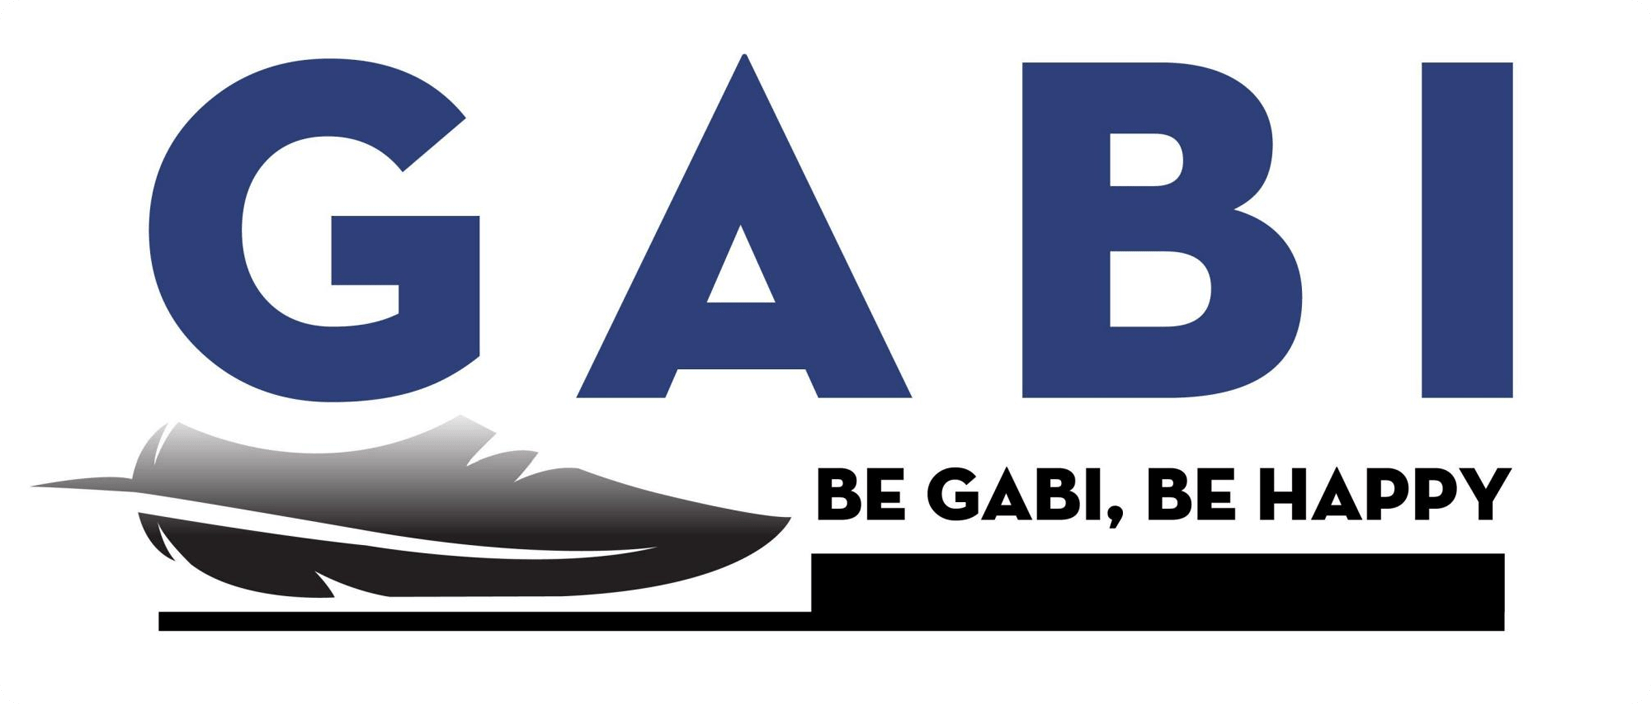 Con los servicios de diseño, el logotipo de la empresa Gabi expresa a través de una pluma de color rosa que aportan color y bajadas de la calculadora ayuda a Gabi es la clase de lujo de negocios